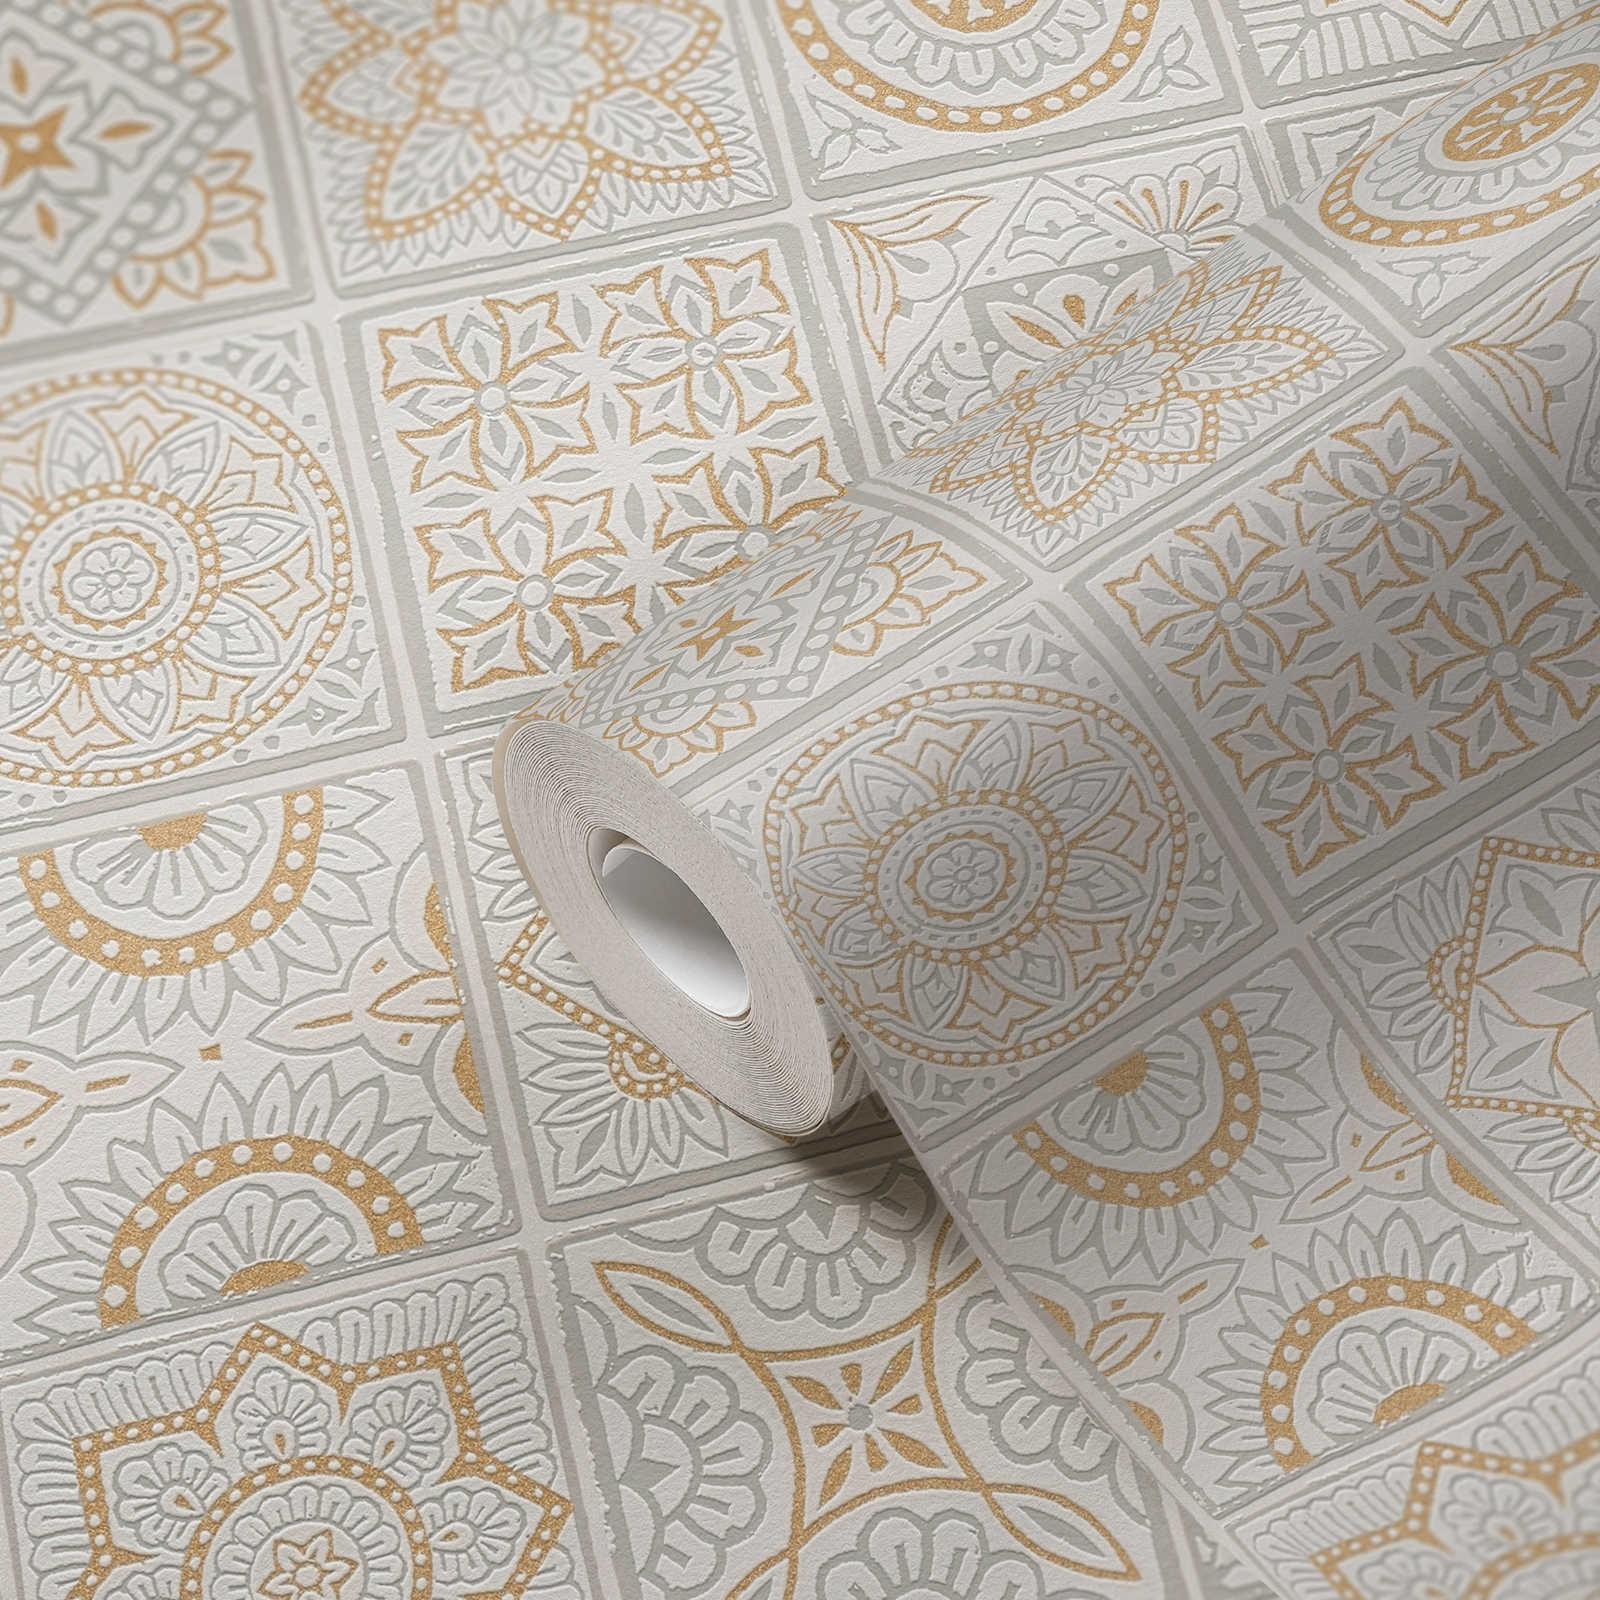             Fliesenoptik Vliestapete mit floralen Mosaiken – Gold, Grau, Weiß
        